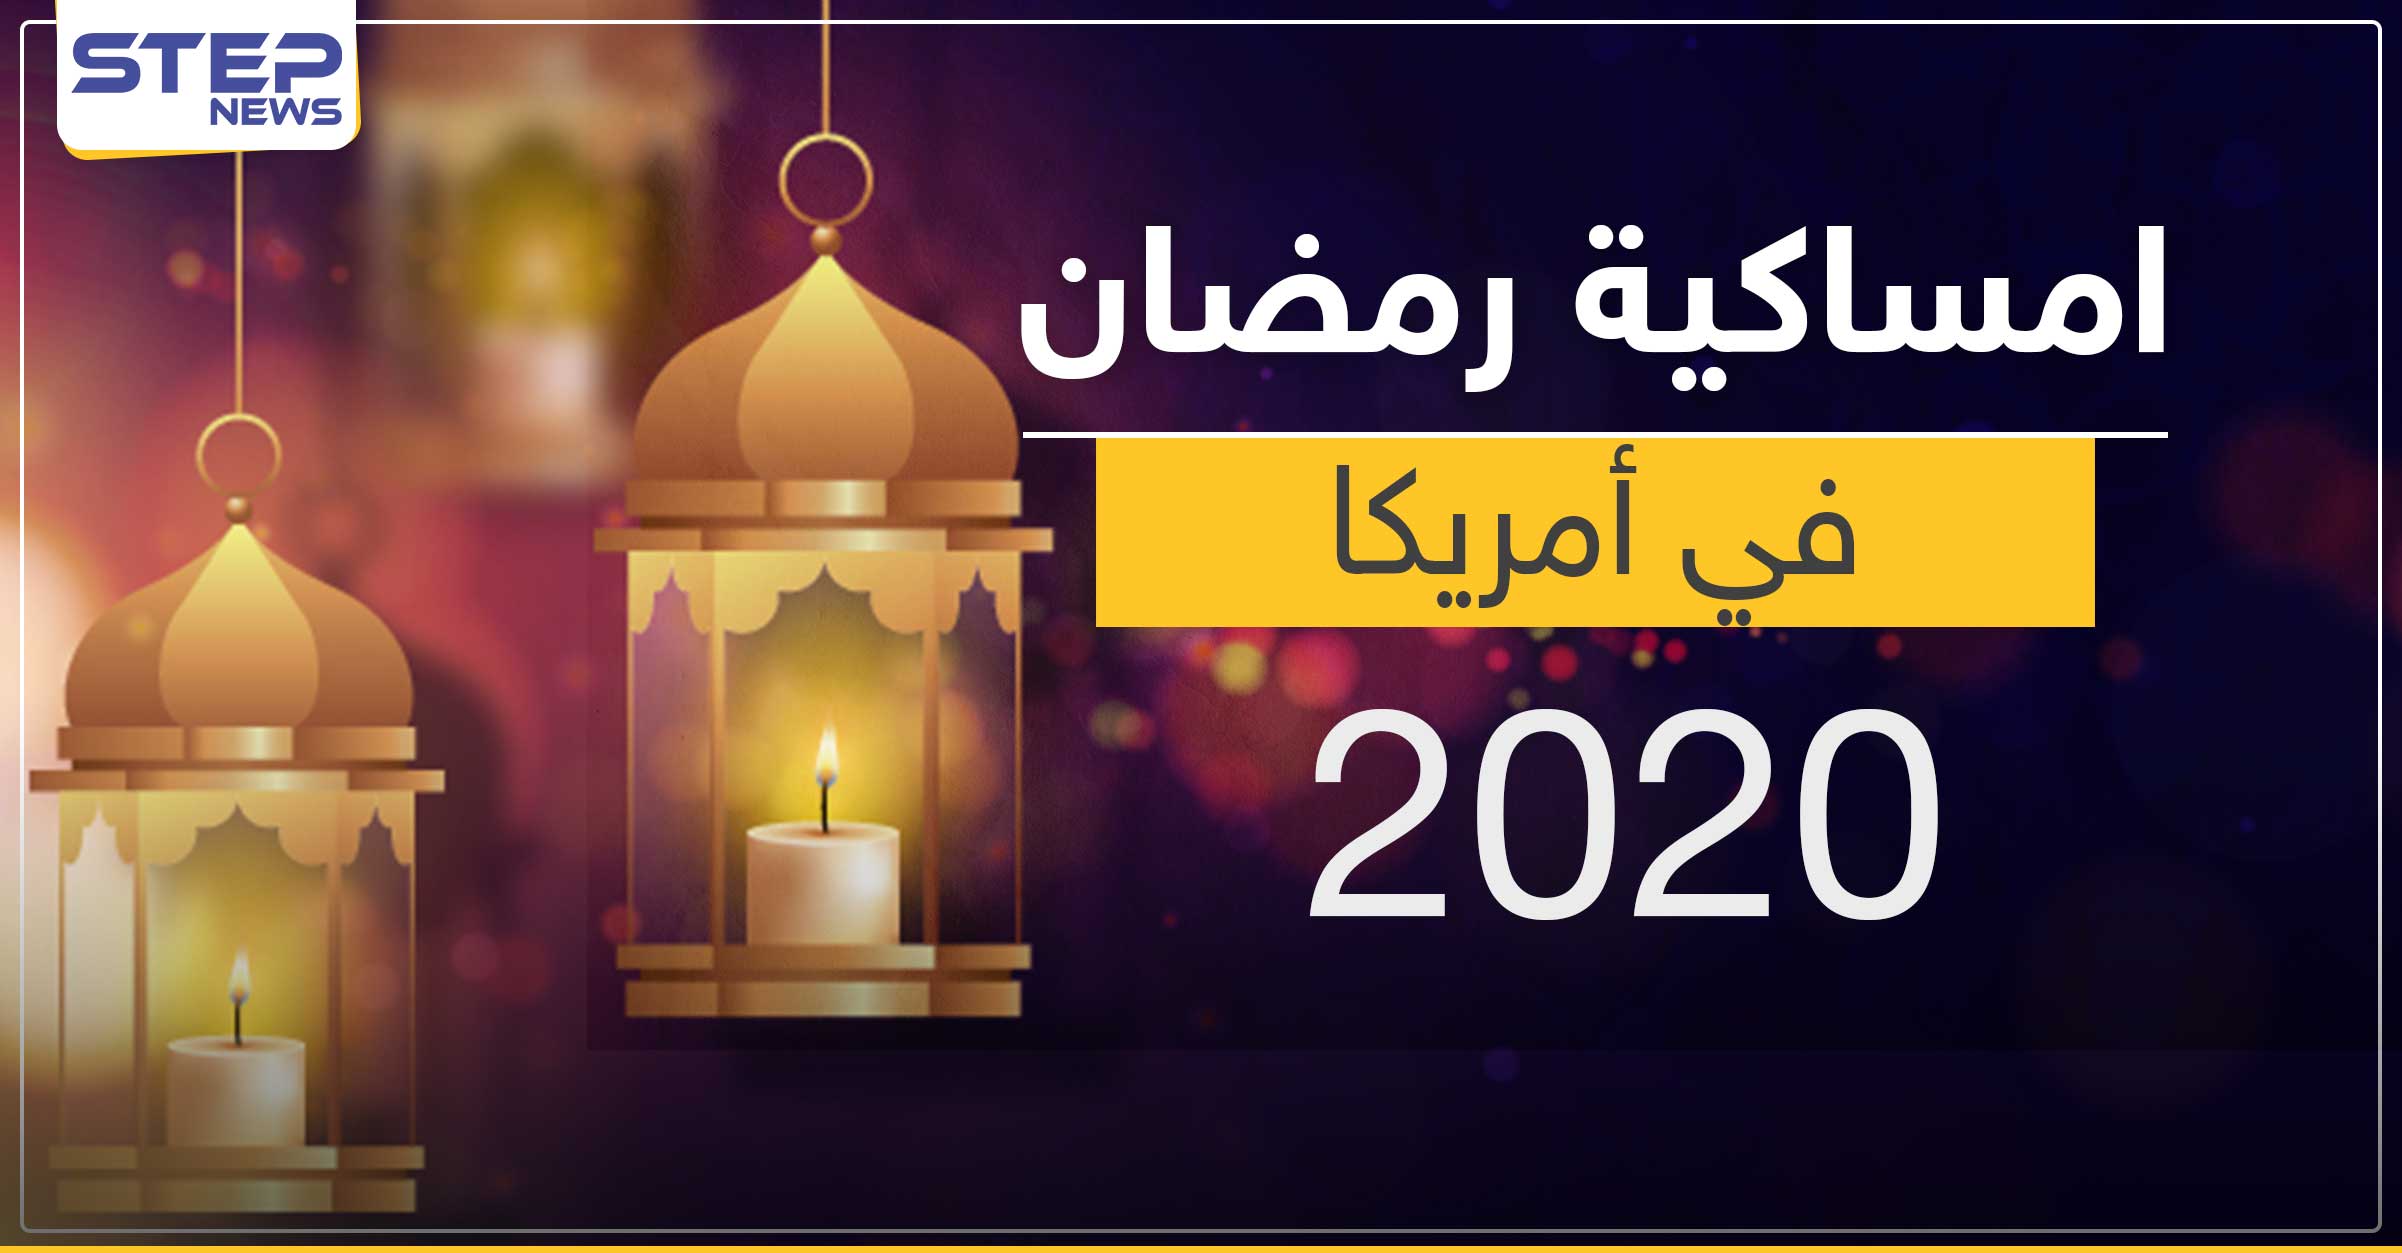 امساكية رمضان 2020 في أمريكا وكالة ستيب الإخبارية